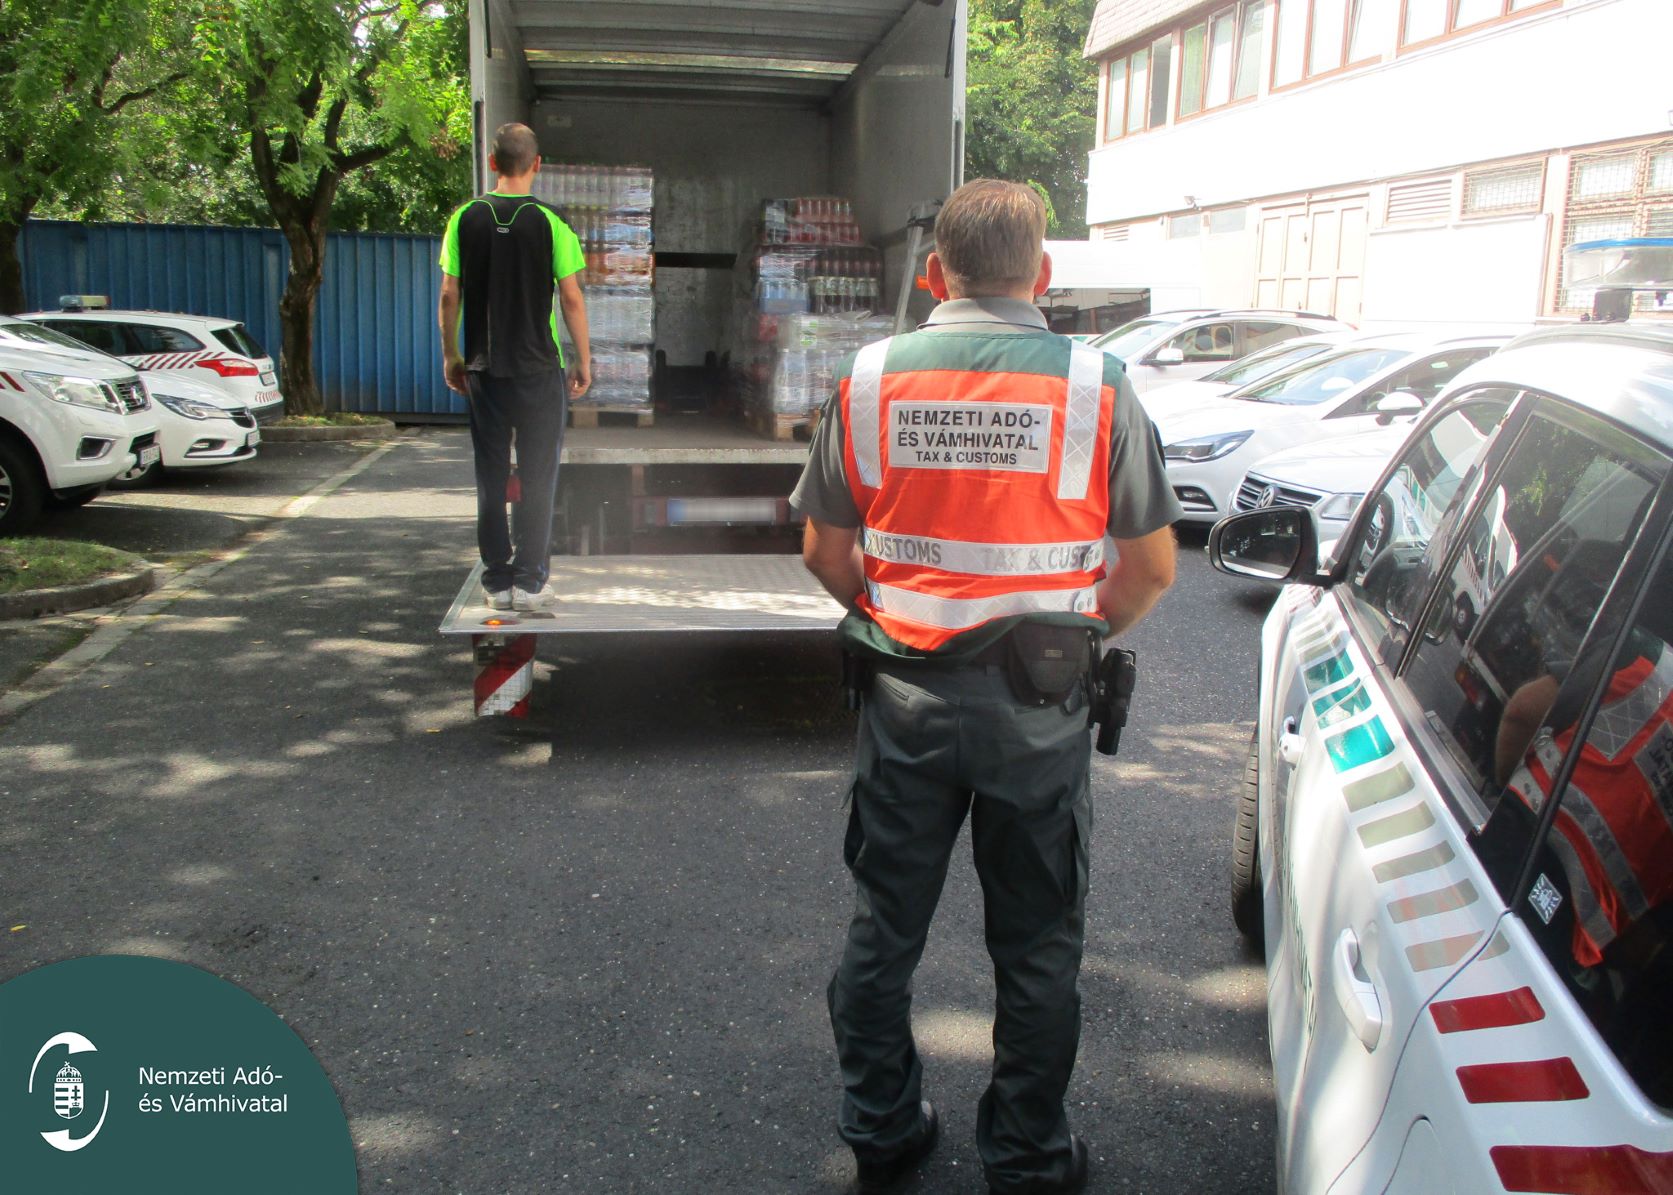 Győrben, egyszerű közúti ellenőrzés során bukott le a jogsértéseket elkövető sofőr